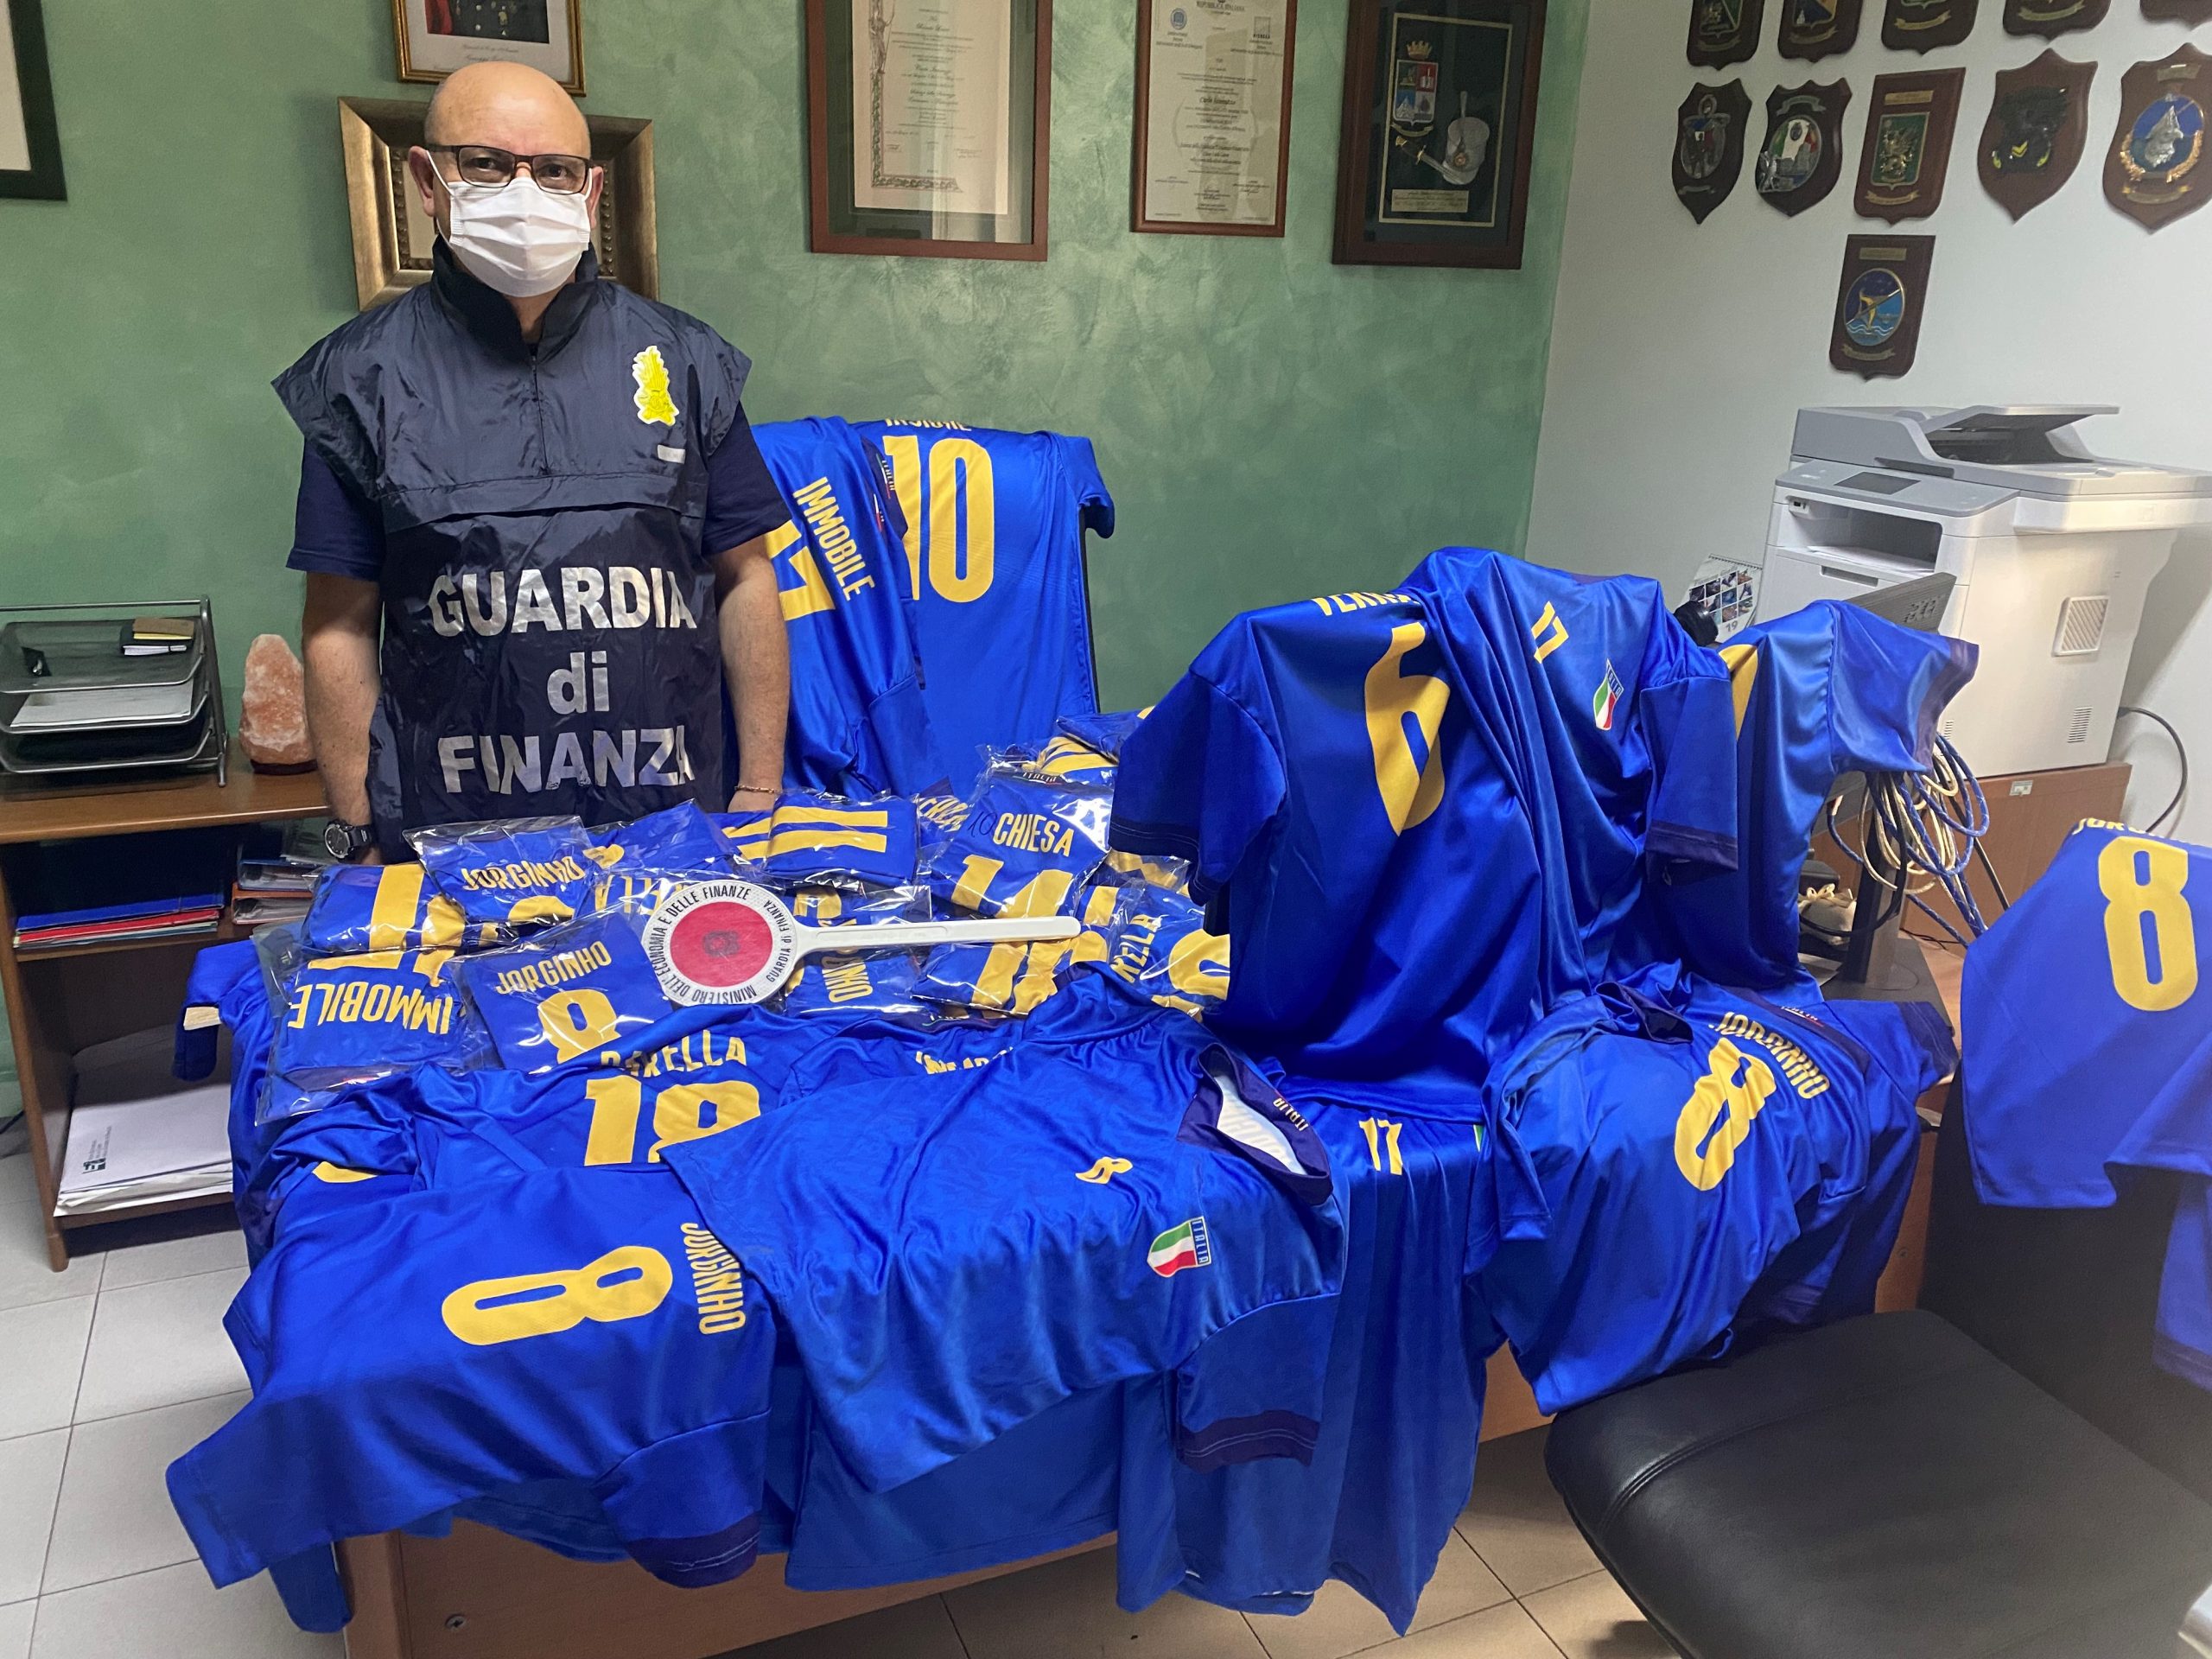 Finanza: sequestrate maglie calcio della Nazionale italiana illecitamente riprodotte, una persona denunciata